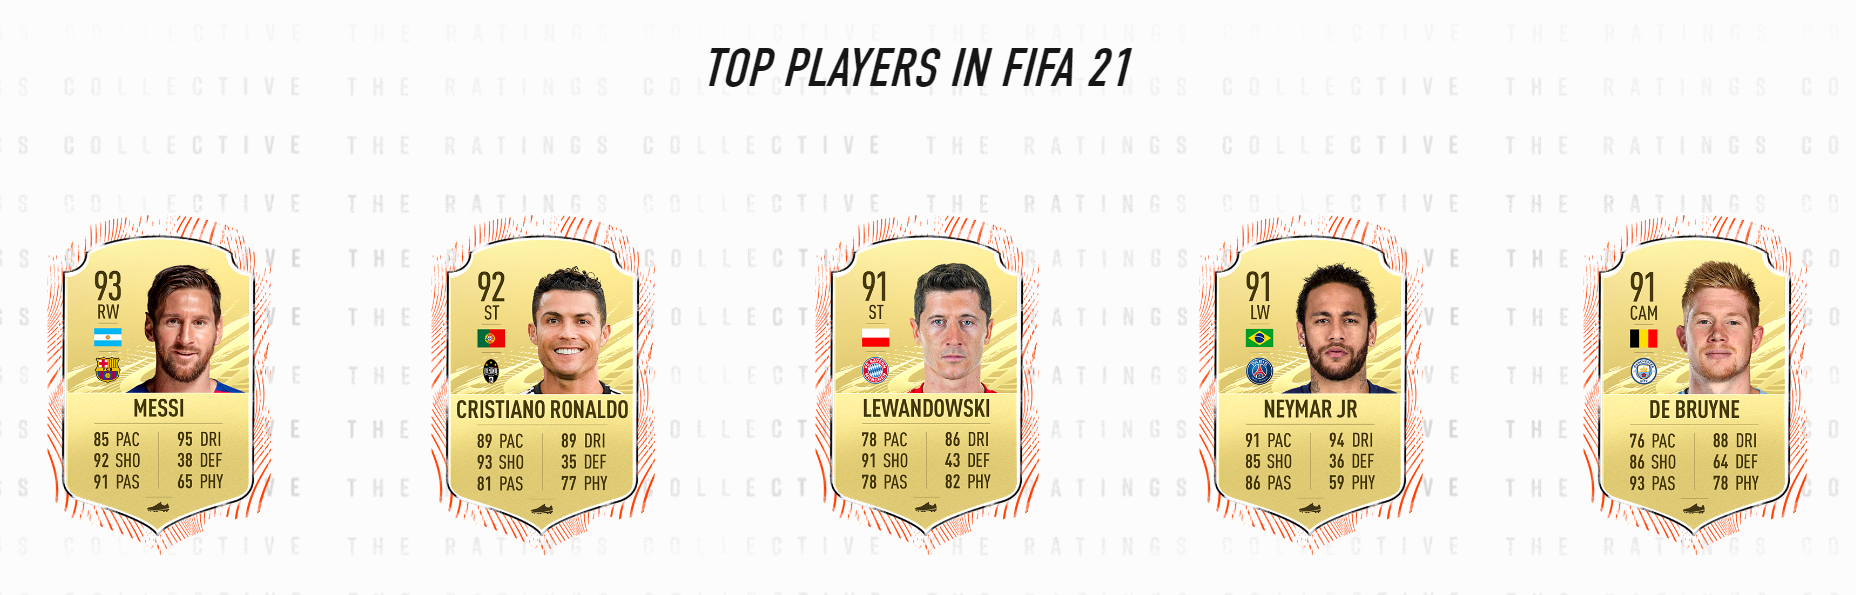 أفضل 5 لاعبين في FIFA 21